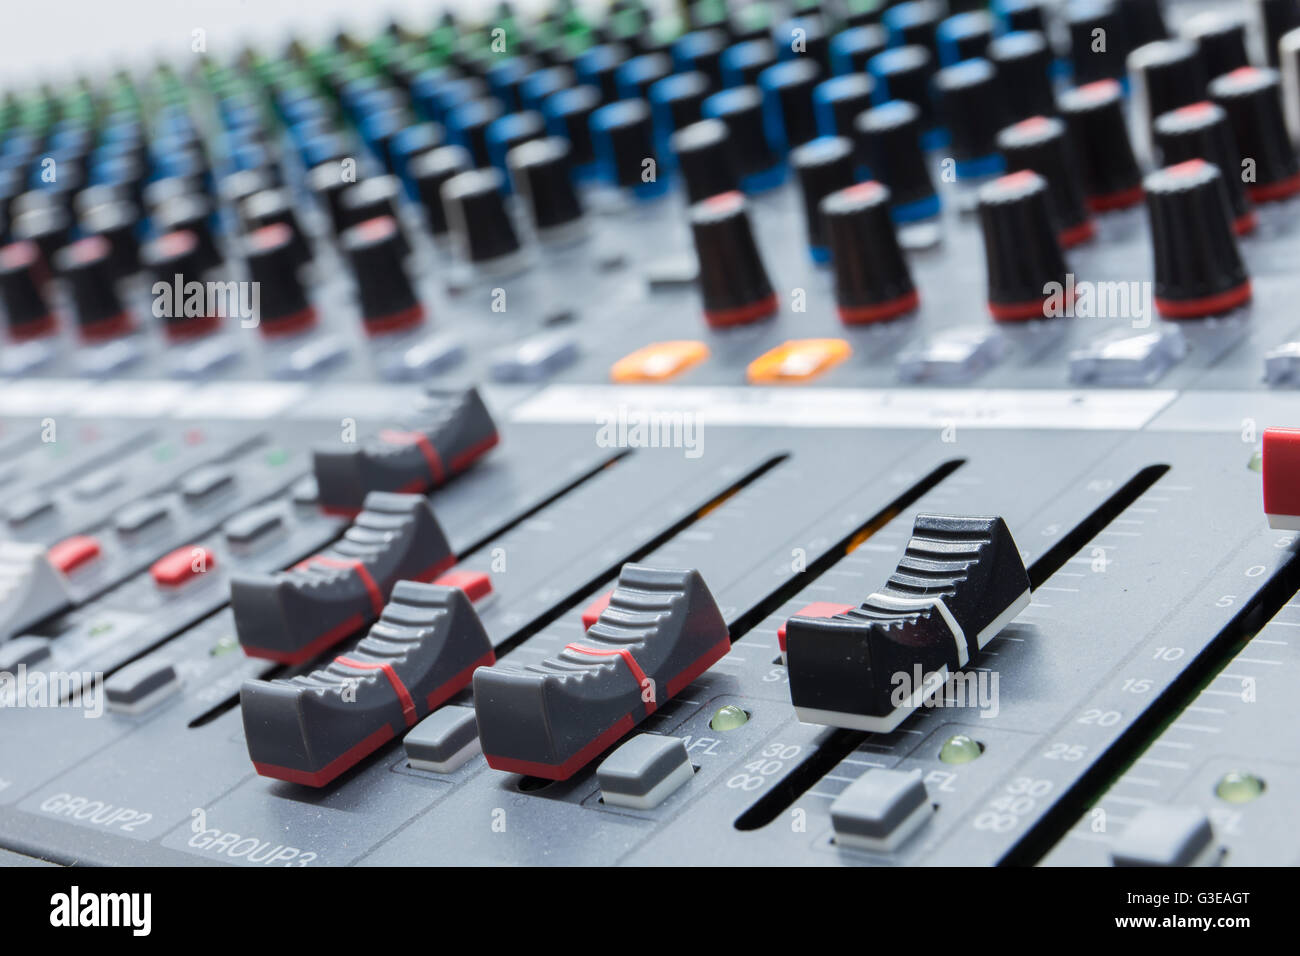 L'équipement pour les boutons de commande de mixage sonore Banque D'Images